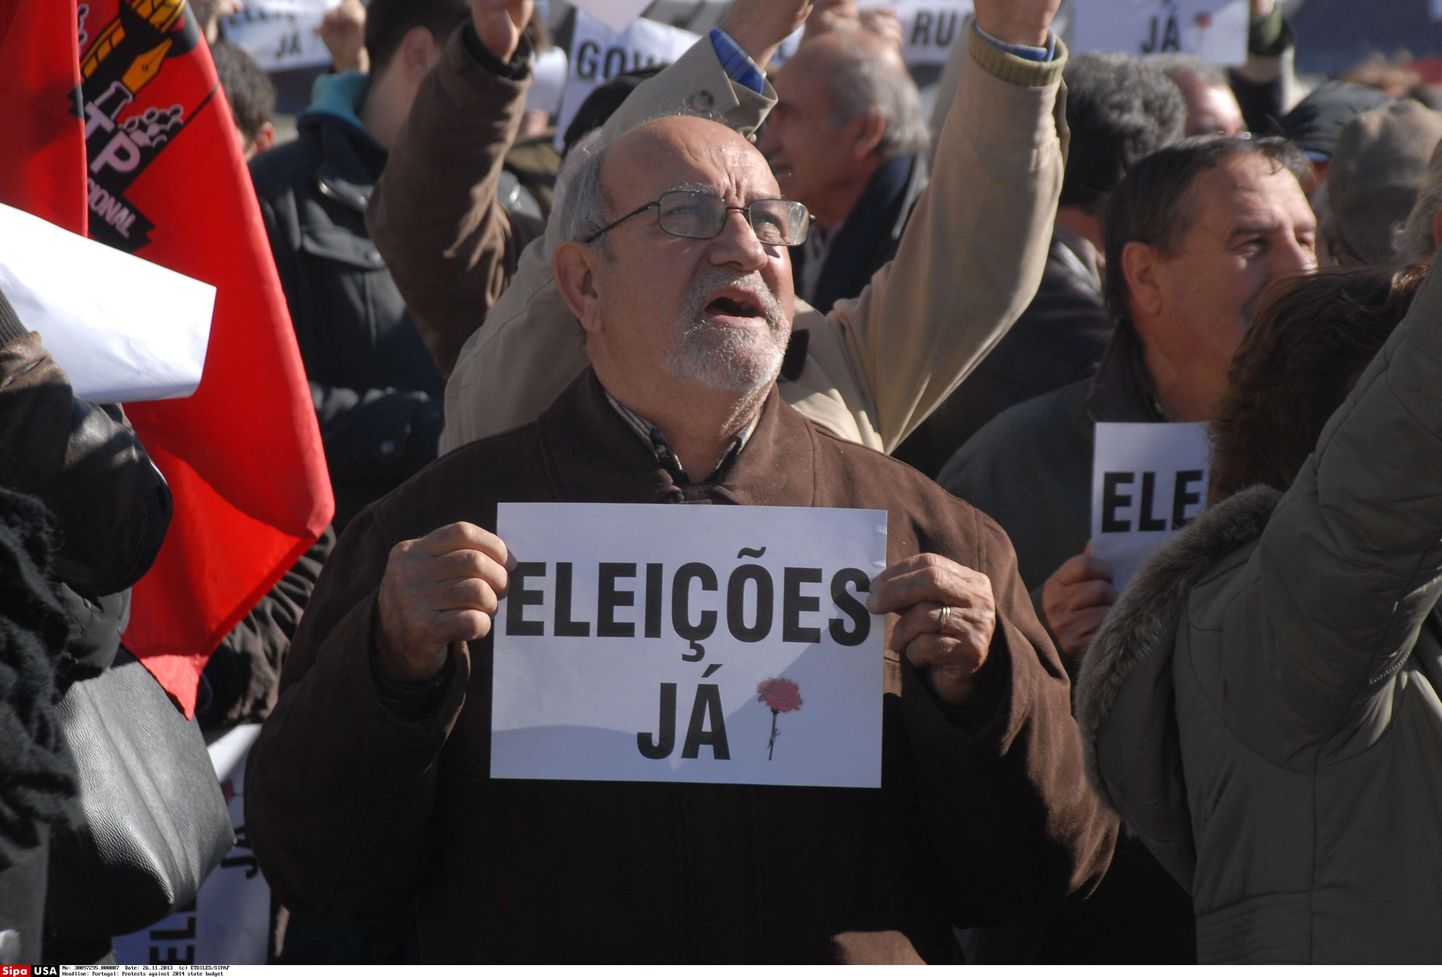 Novembris protesteerisid Portugali pealinnas pensionikärbete vastu sajad inimesed.